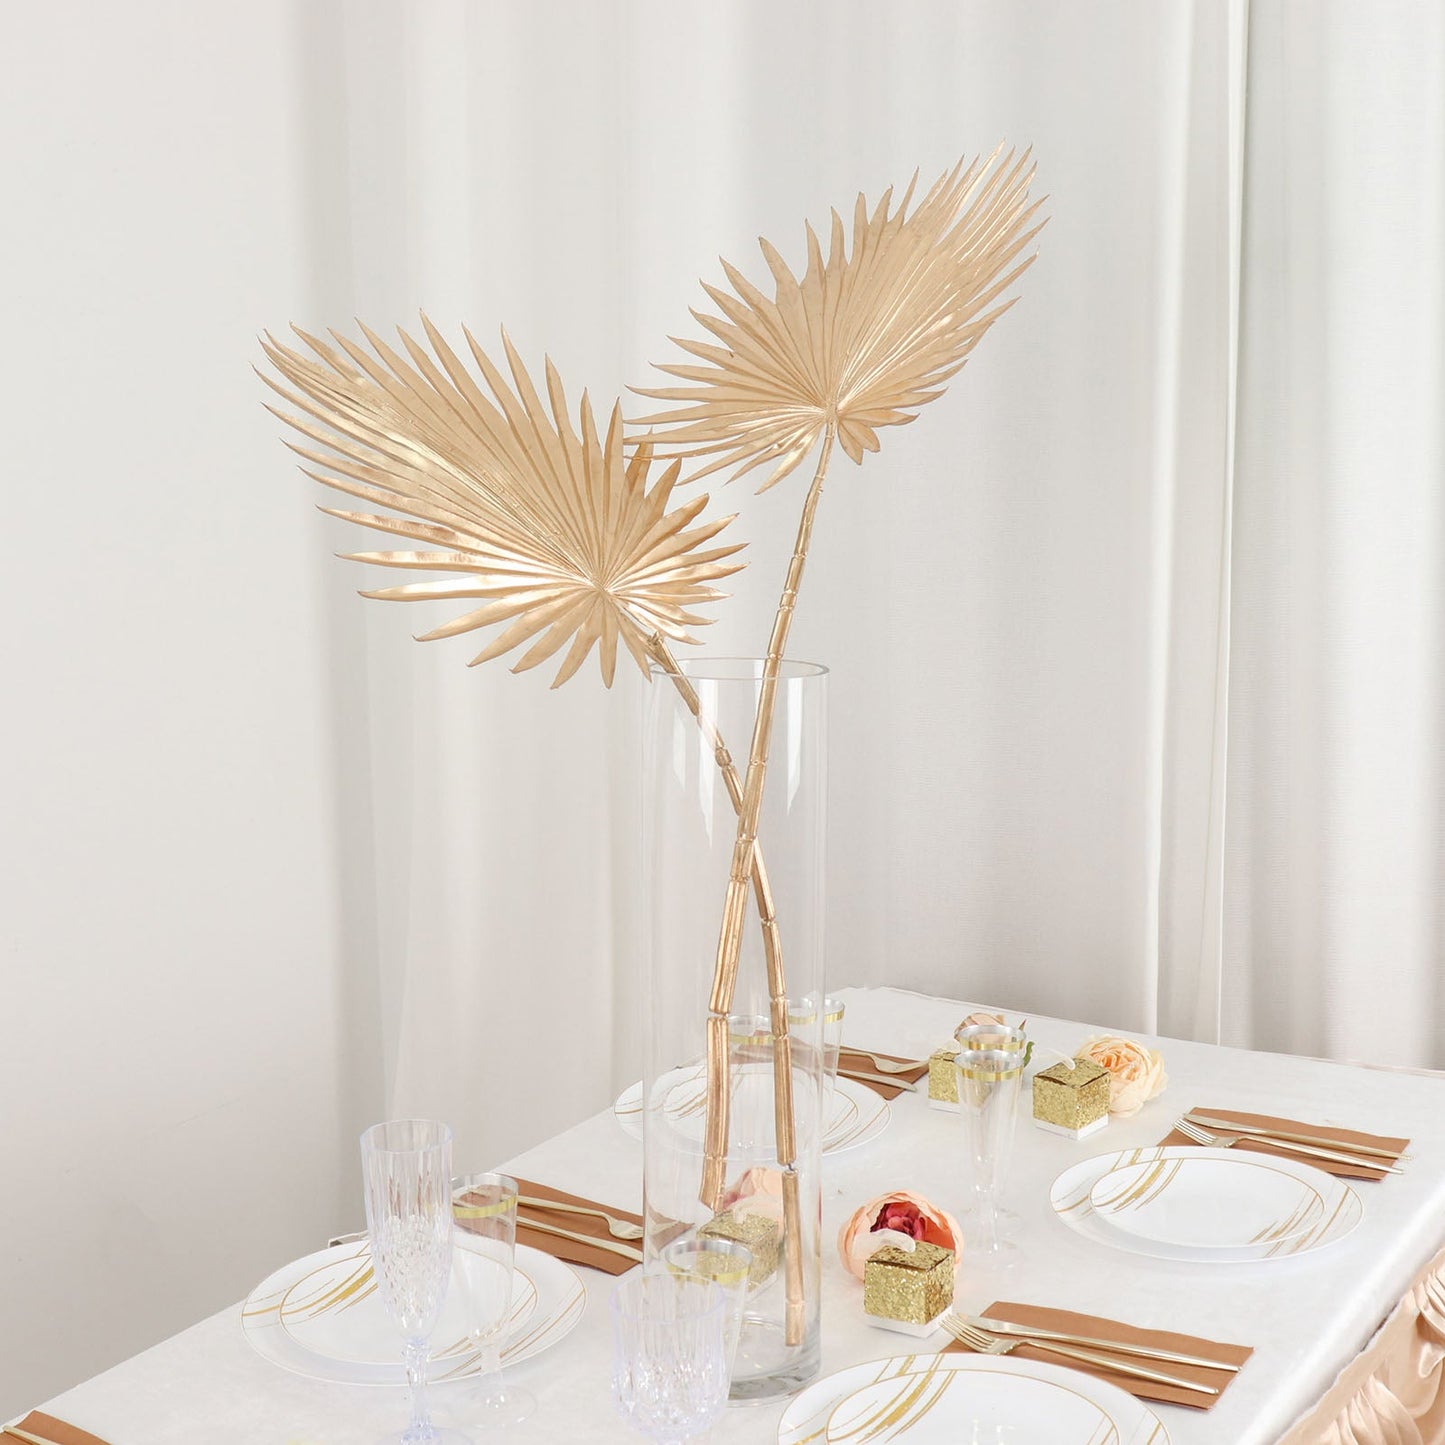 2 Pack Shiny Golden Artificial Tropical Plant Fan Palm Leaf Stems, Faux Floral Arrangements Table Centerpiece Decor 34"